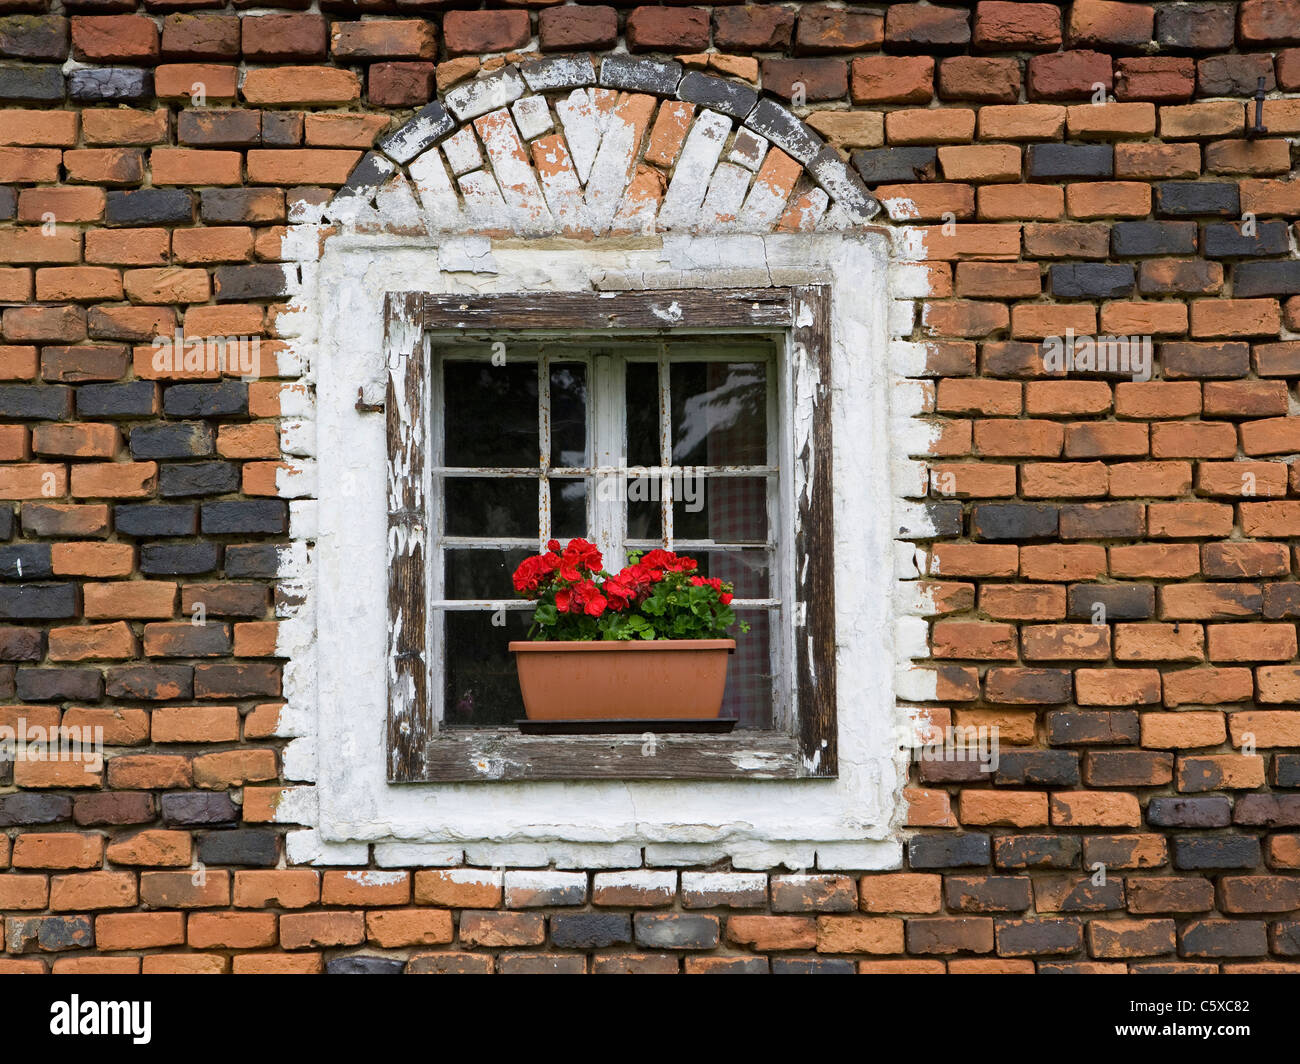 Austria, Austria superiore, finestra con cassetta per fiori Foto Stock